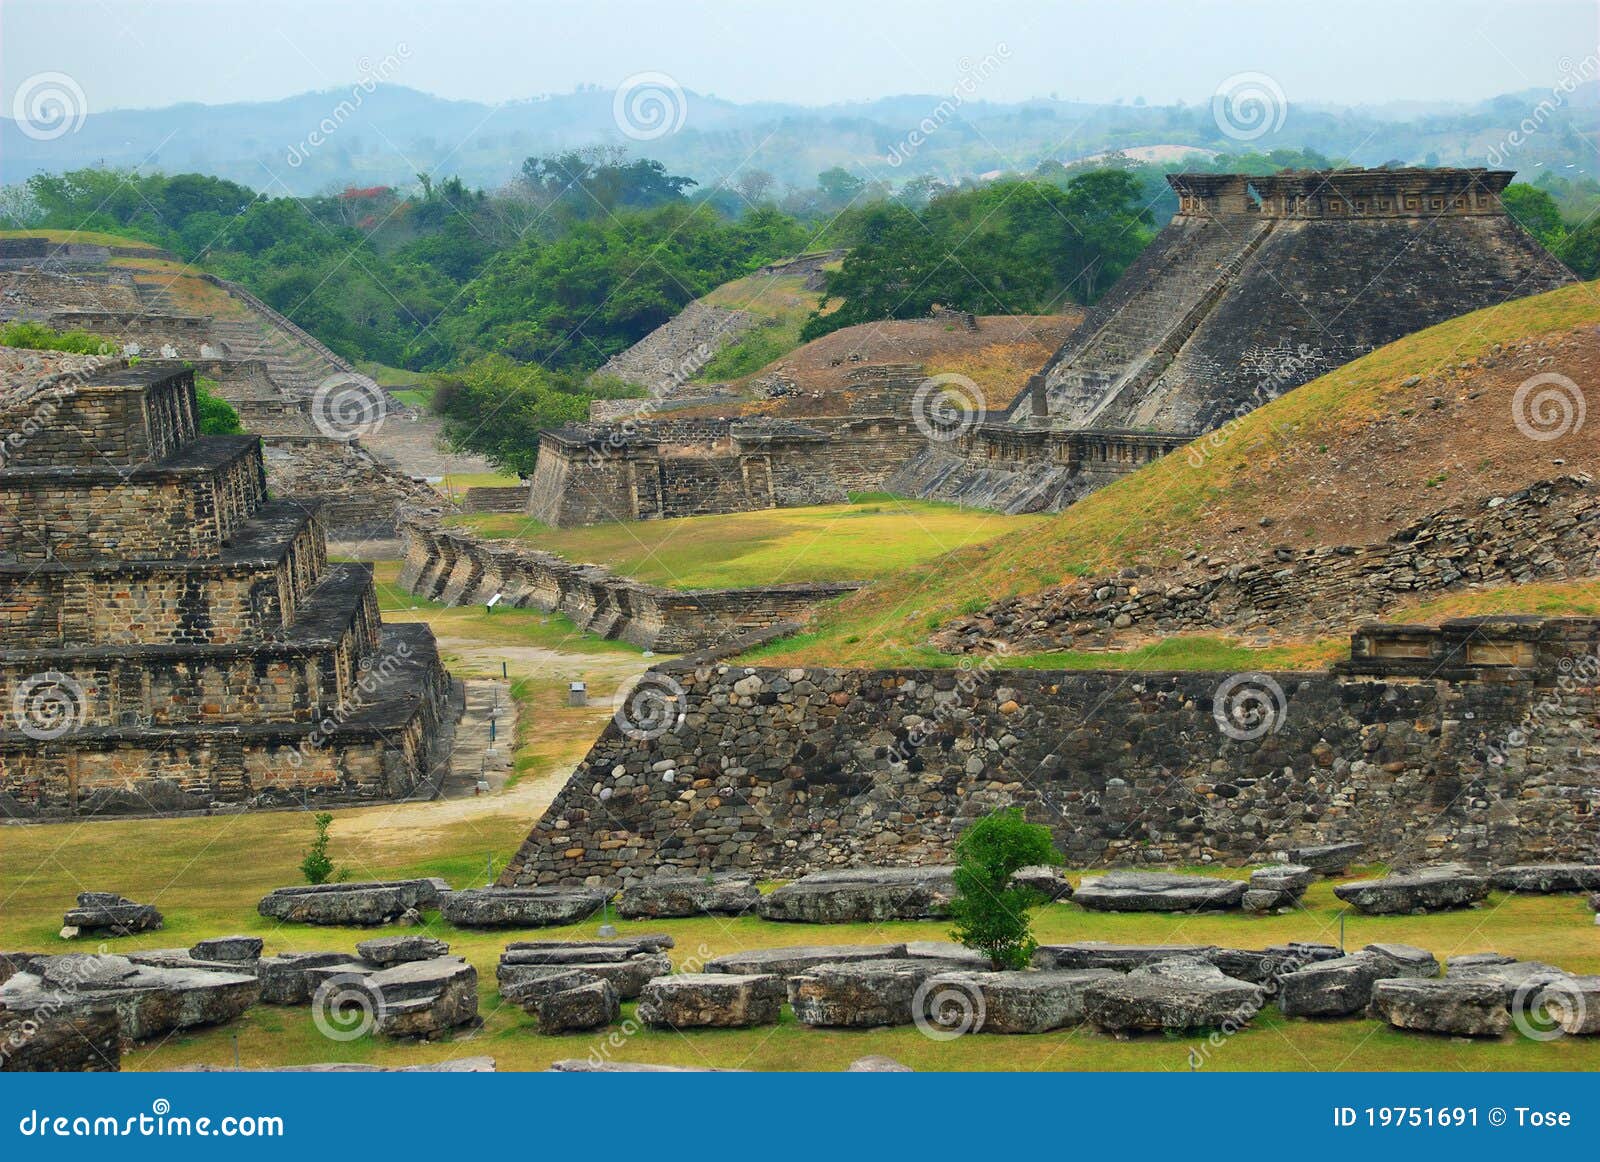 el tajin archaeological ruins, veracruz, mexico